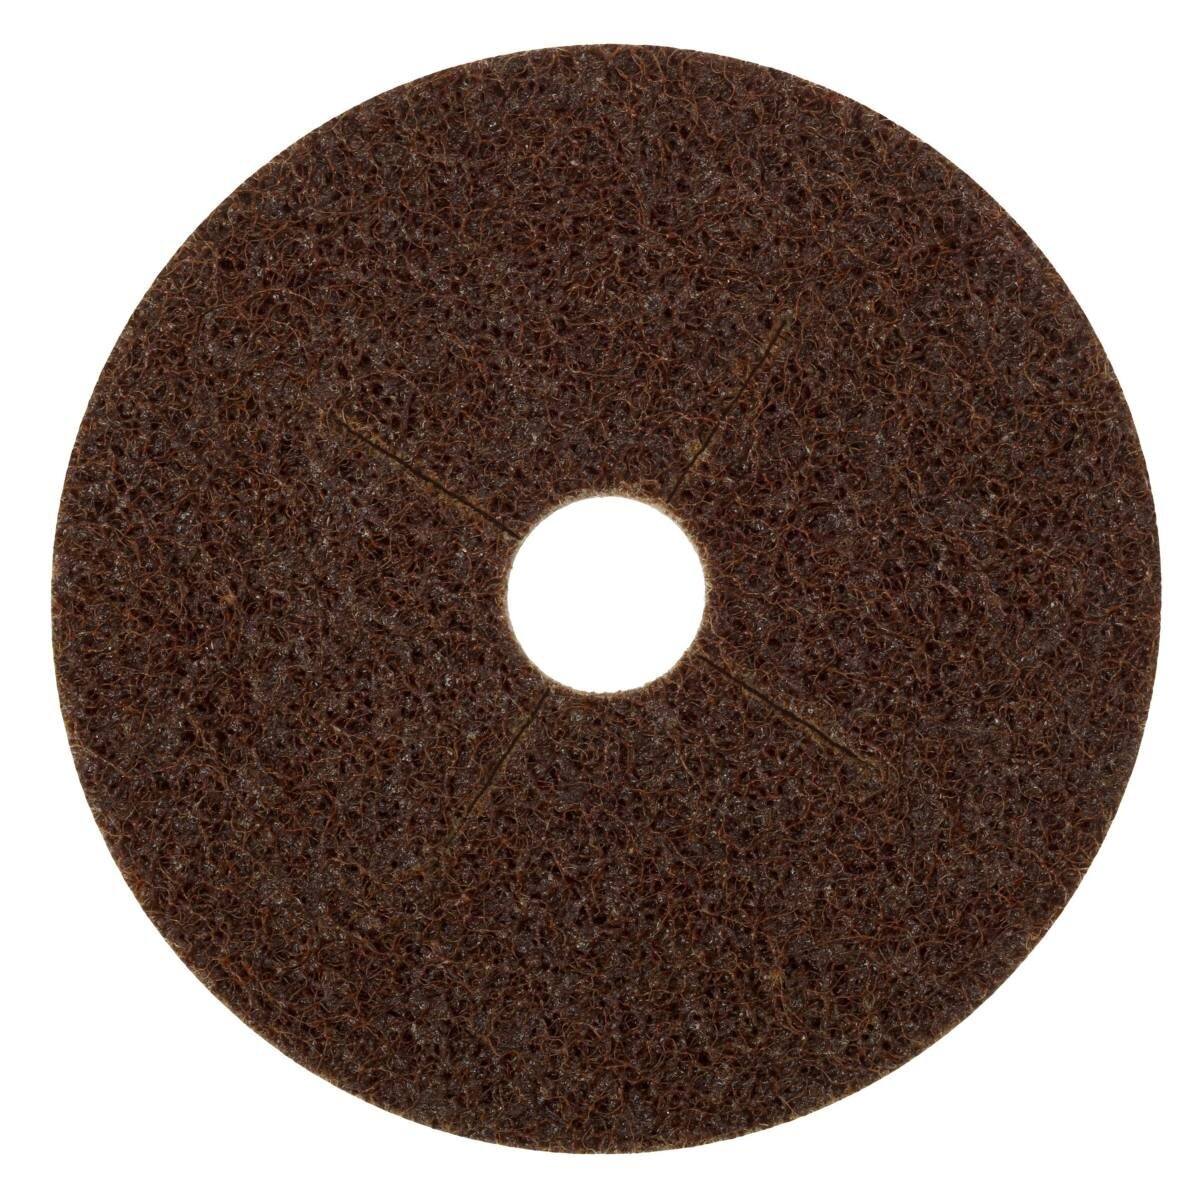 3M Scotch-Brite disco in tessuto non tessuto SC-DB con supporto in fibra, 125 mm, 22 mm, A, ruvido #65332